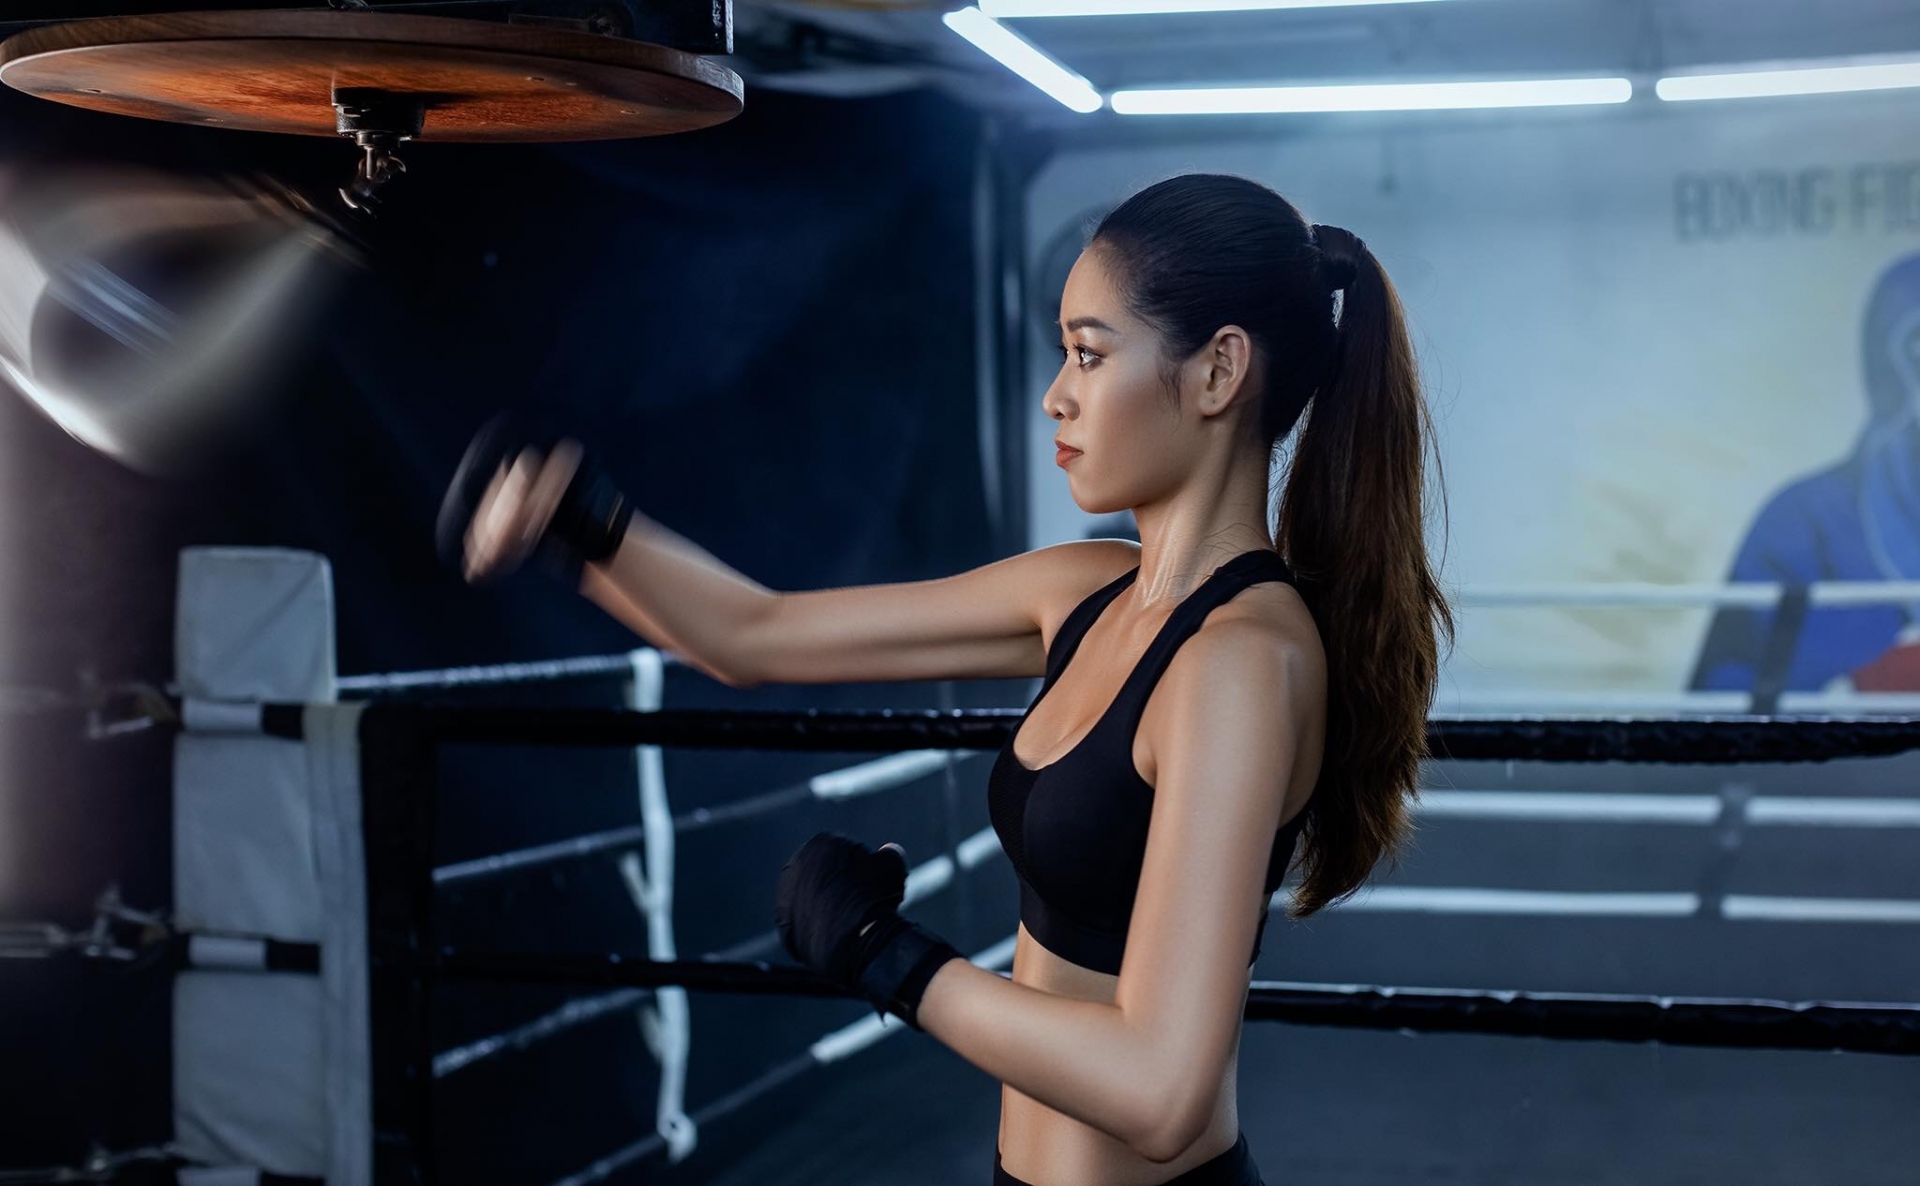 Hoa hậu Khánh Vân chia sẻ boxing giúp cô giải toả căng thẳng khi tung những cú đấm, nhờ đó mà cơ bắp cũng được dẻo dai hơn.